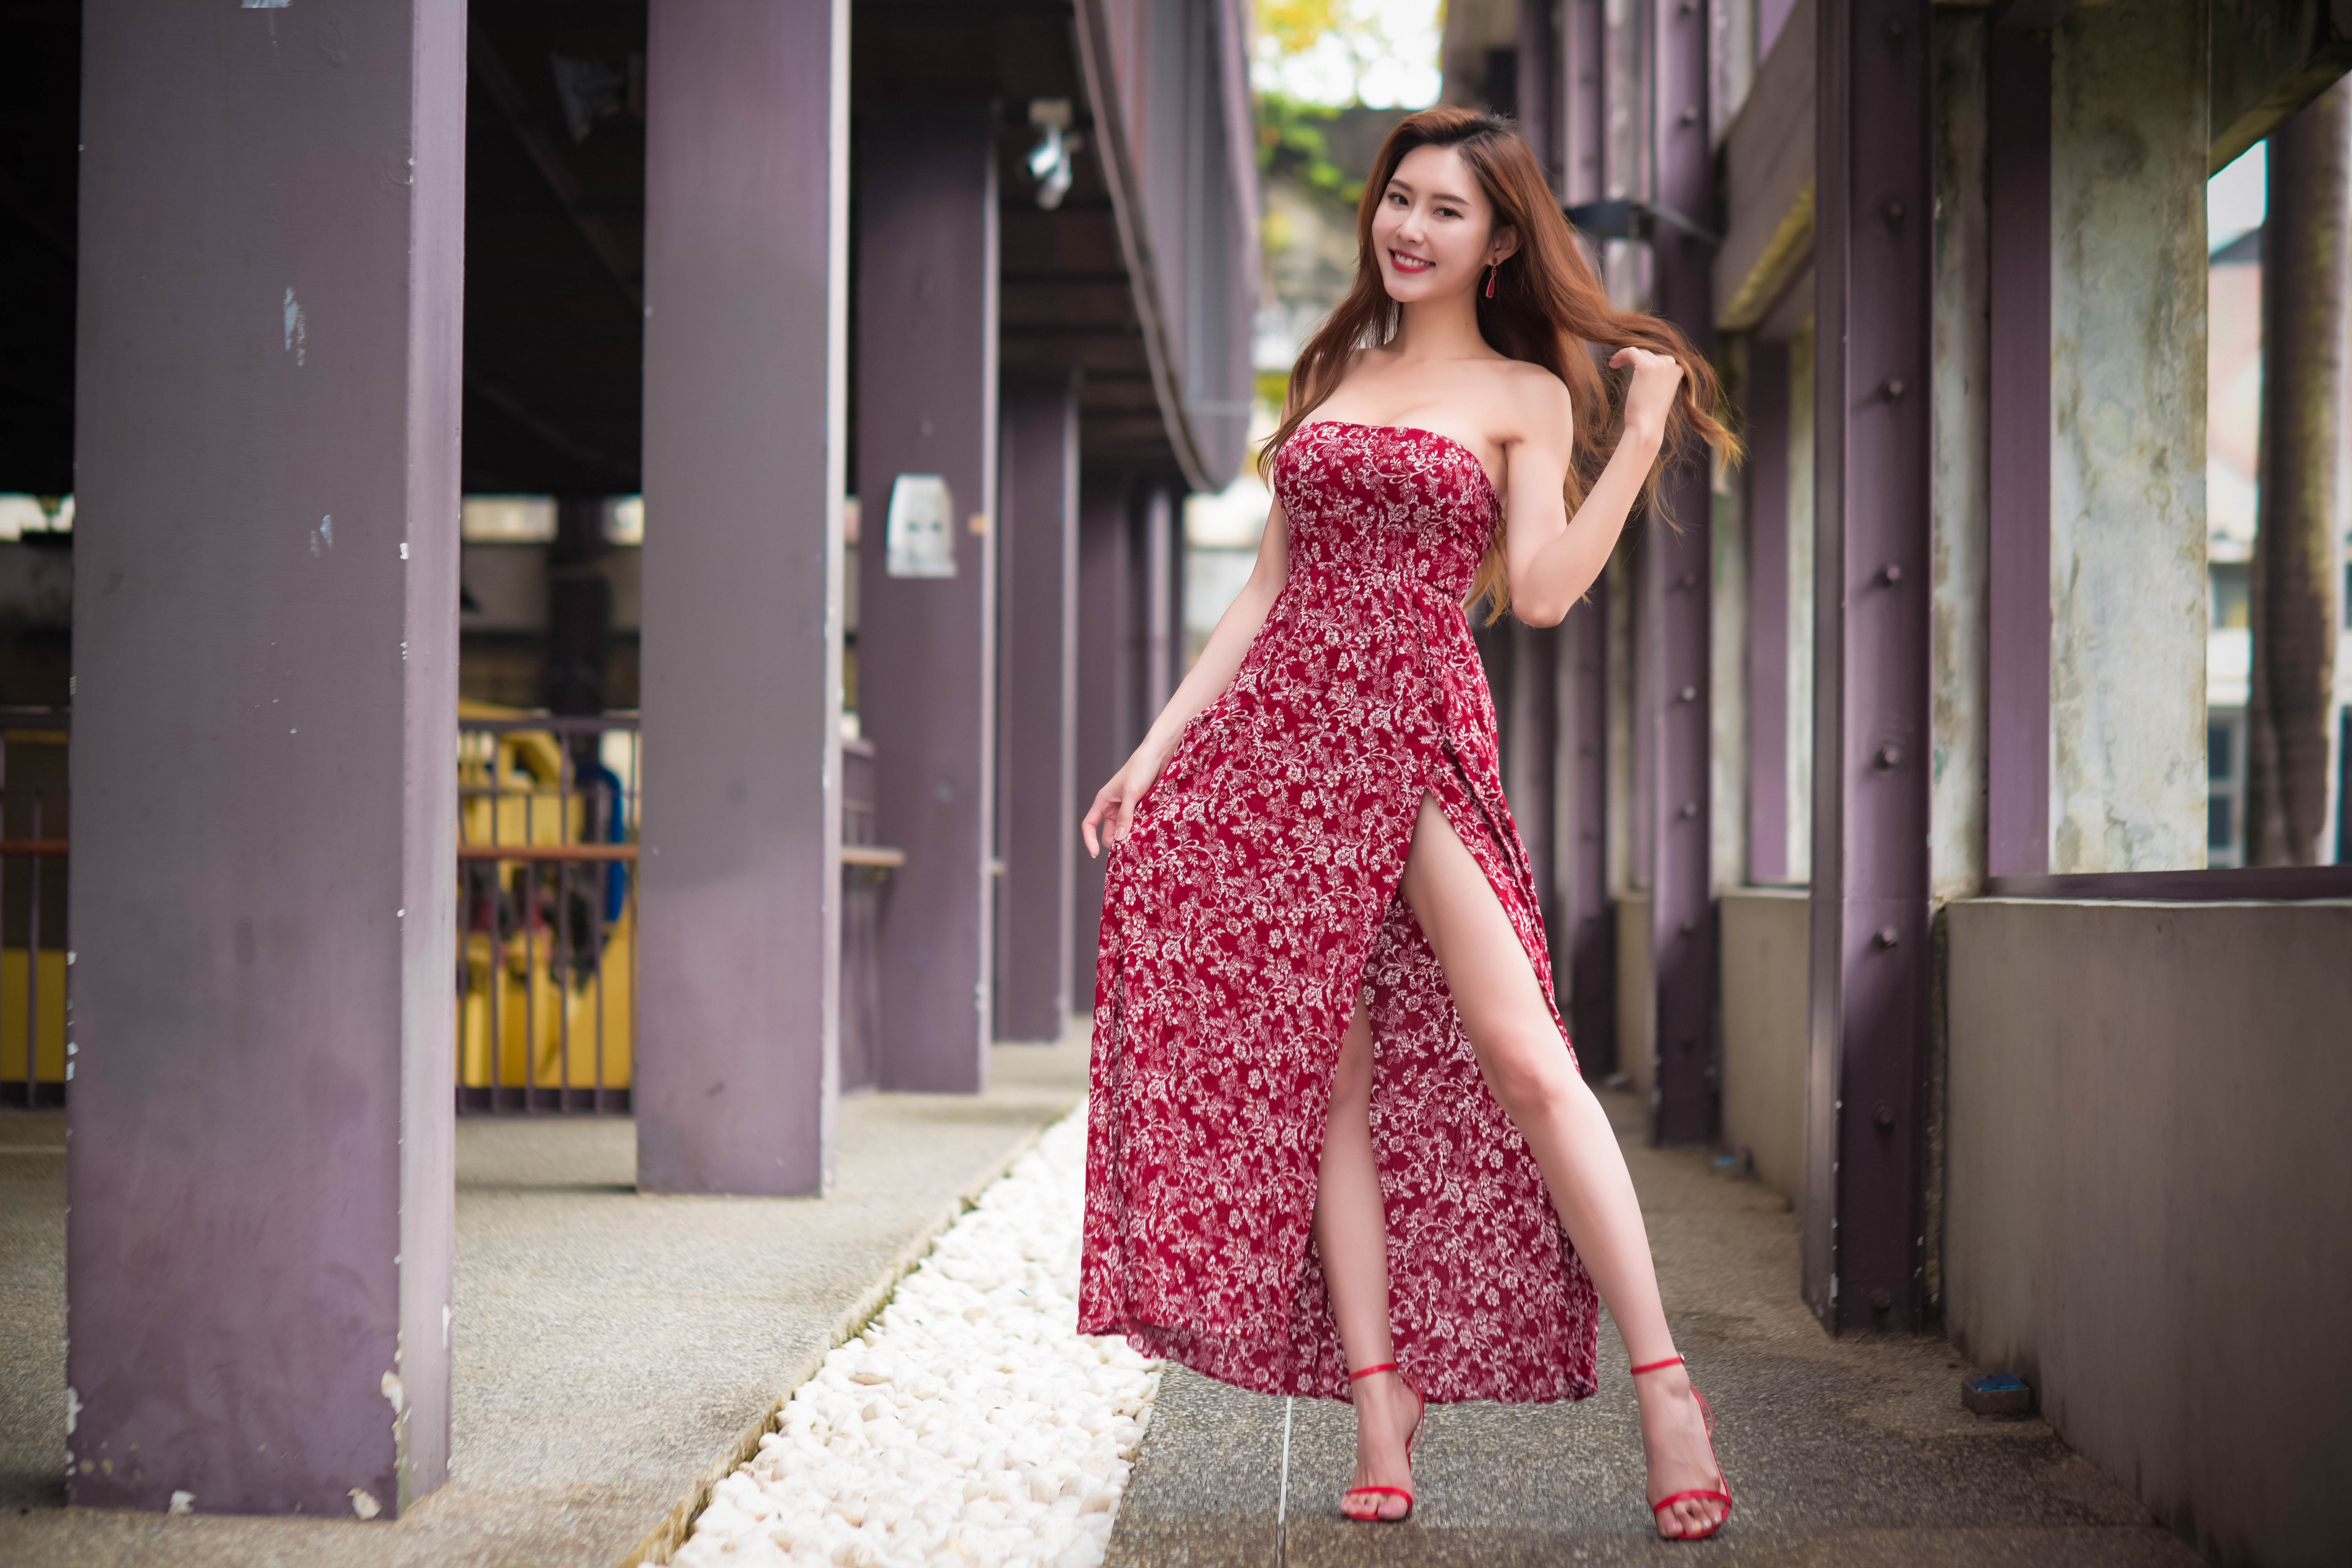 Asian Model Women Long Hair Dark Hair Standing Flower Dress Red Heels Hallway 3840x2560